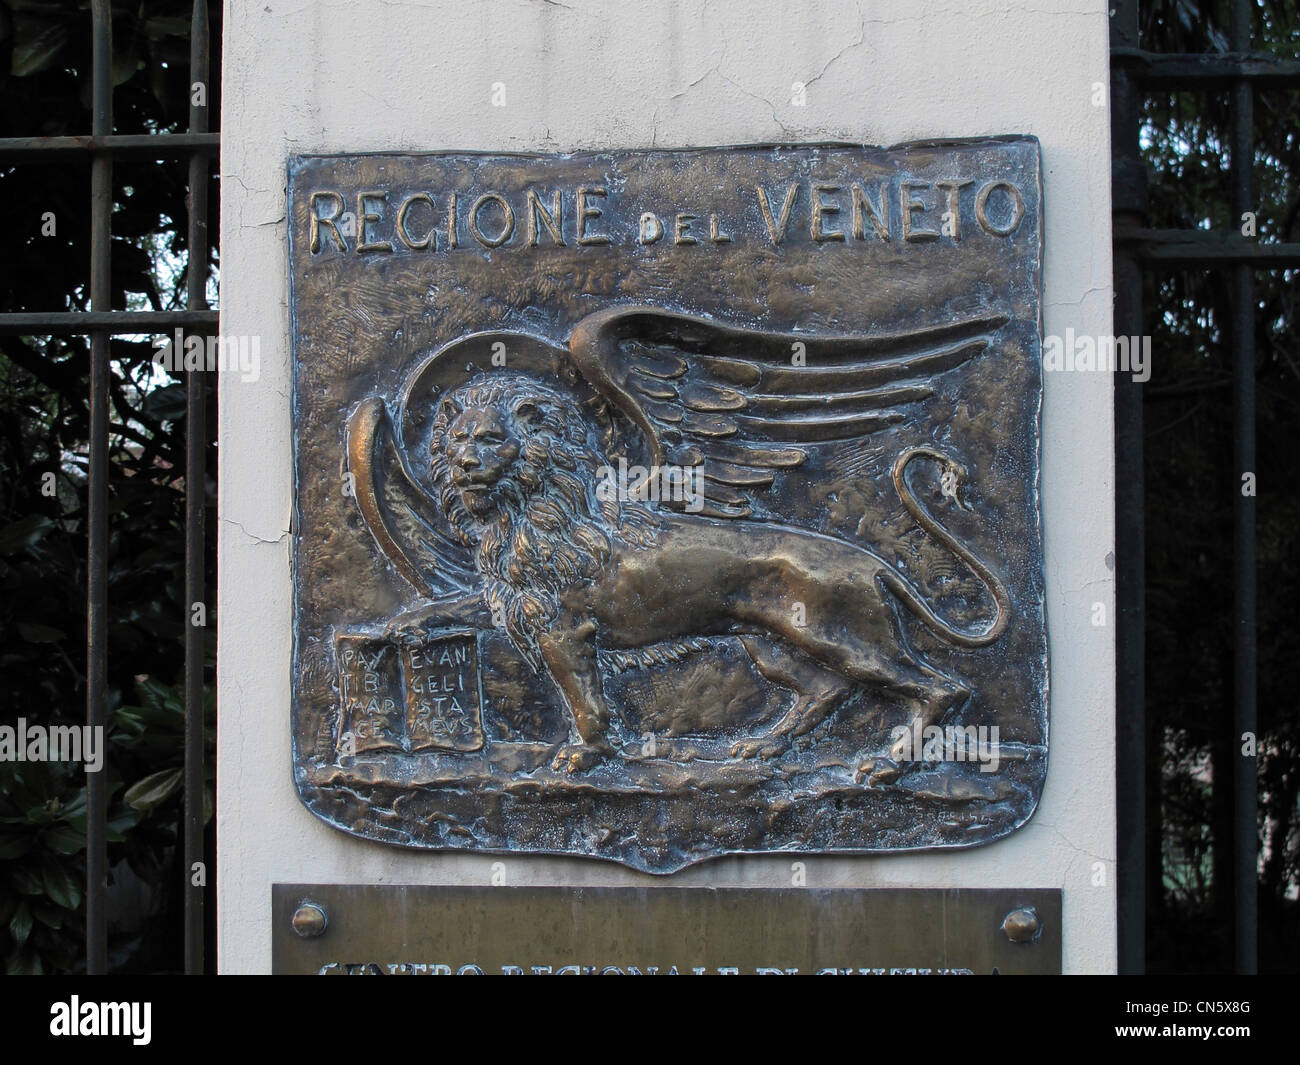 Italy Veneto region sign Stock Photo